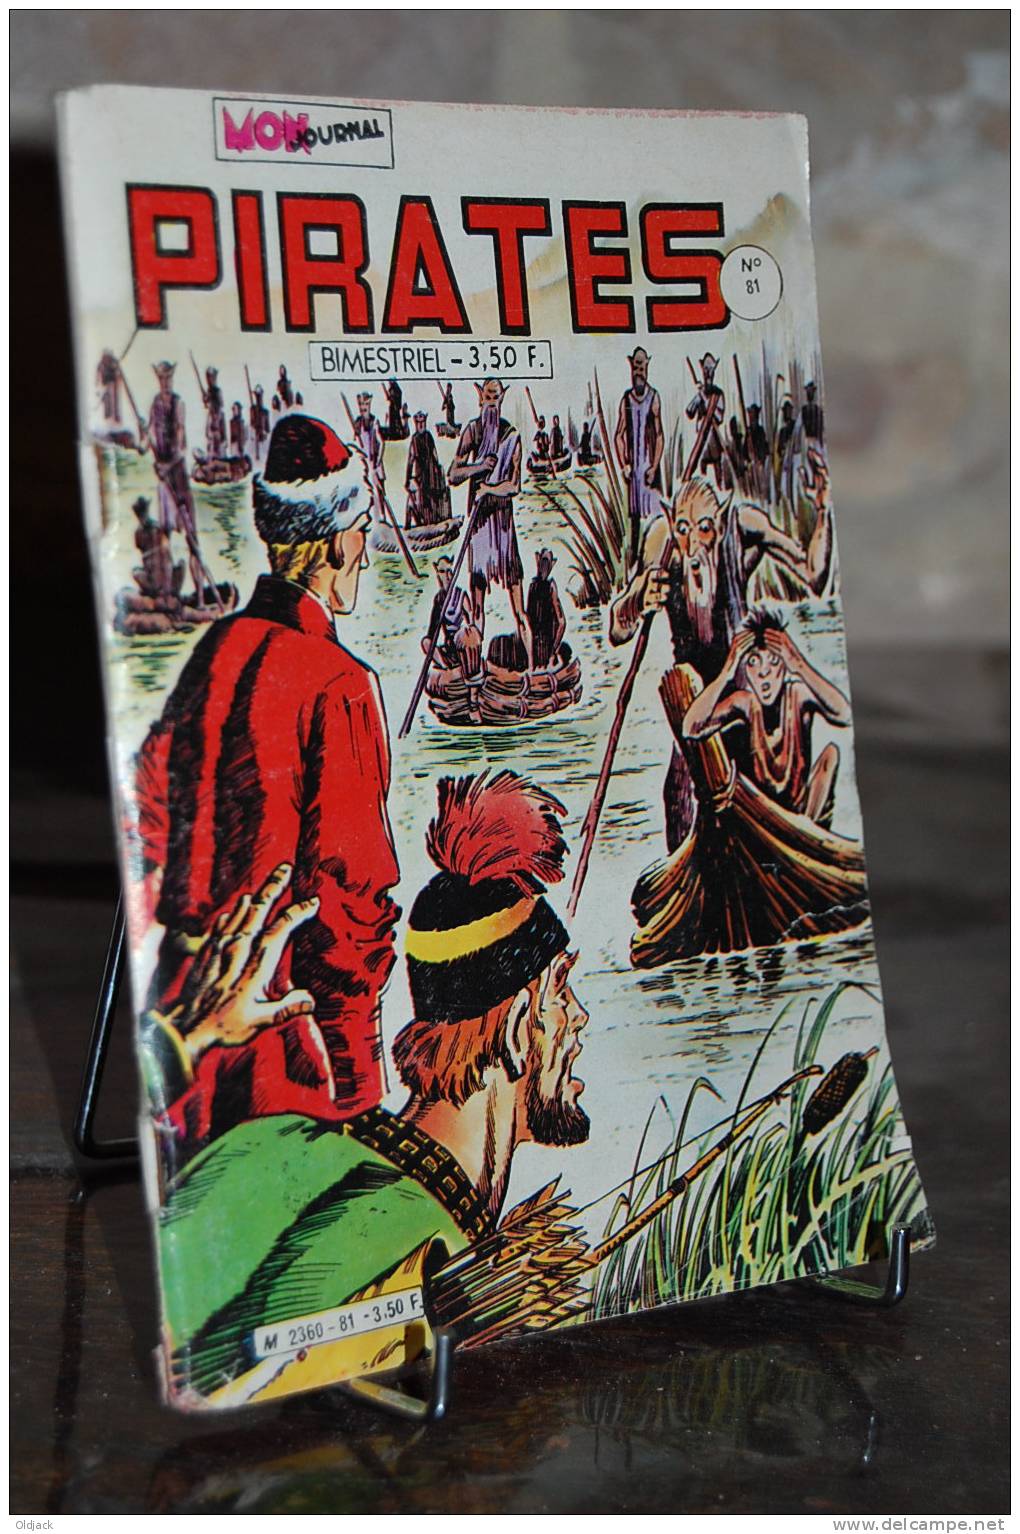 PIRATES N°81 (plato E) - Piraten